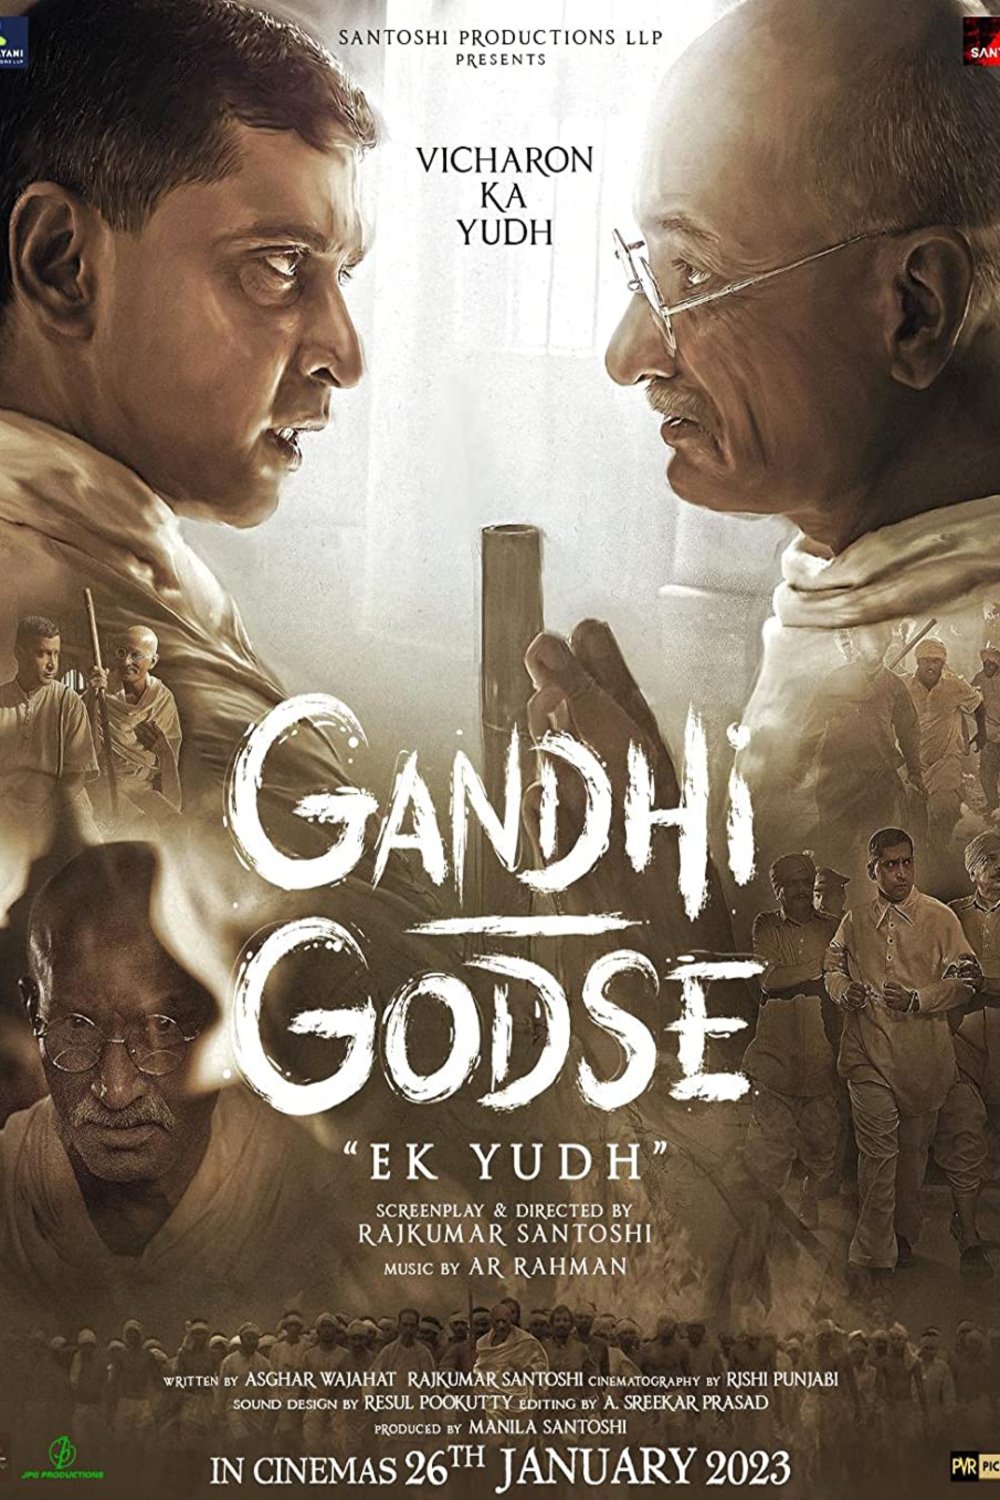 Hindi poster of the movie Gandhi Godse Ek Yudh